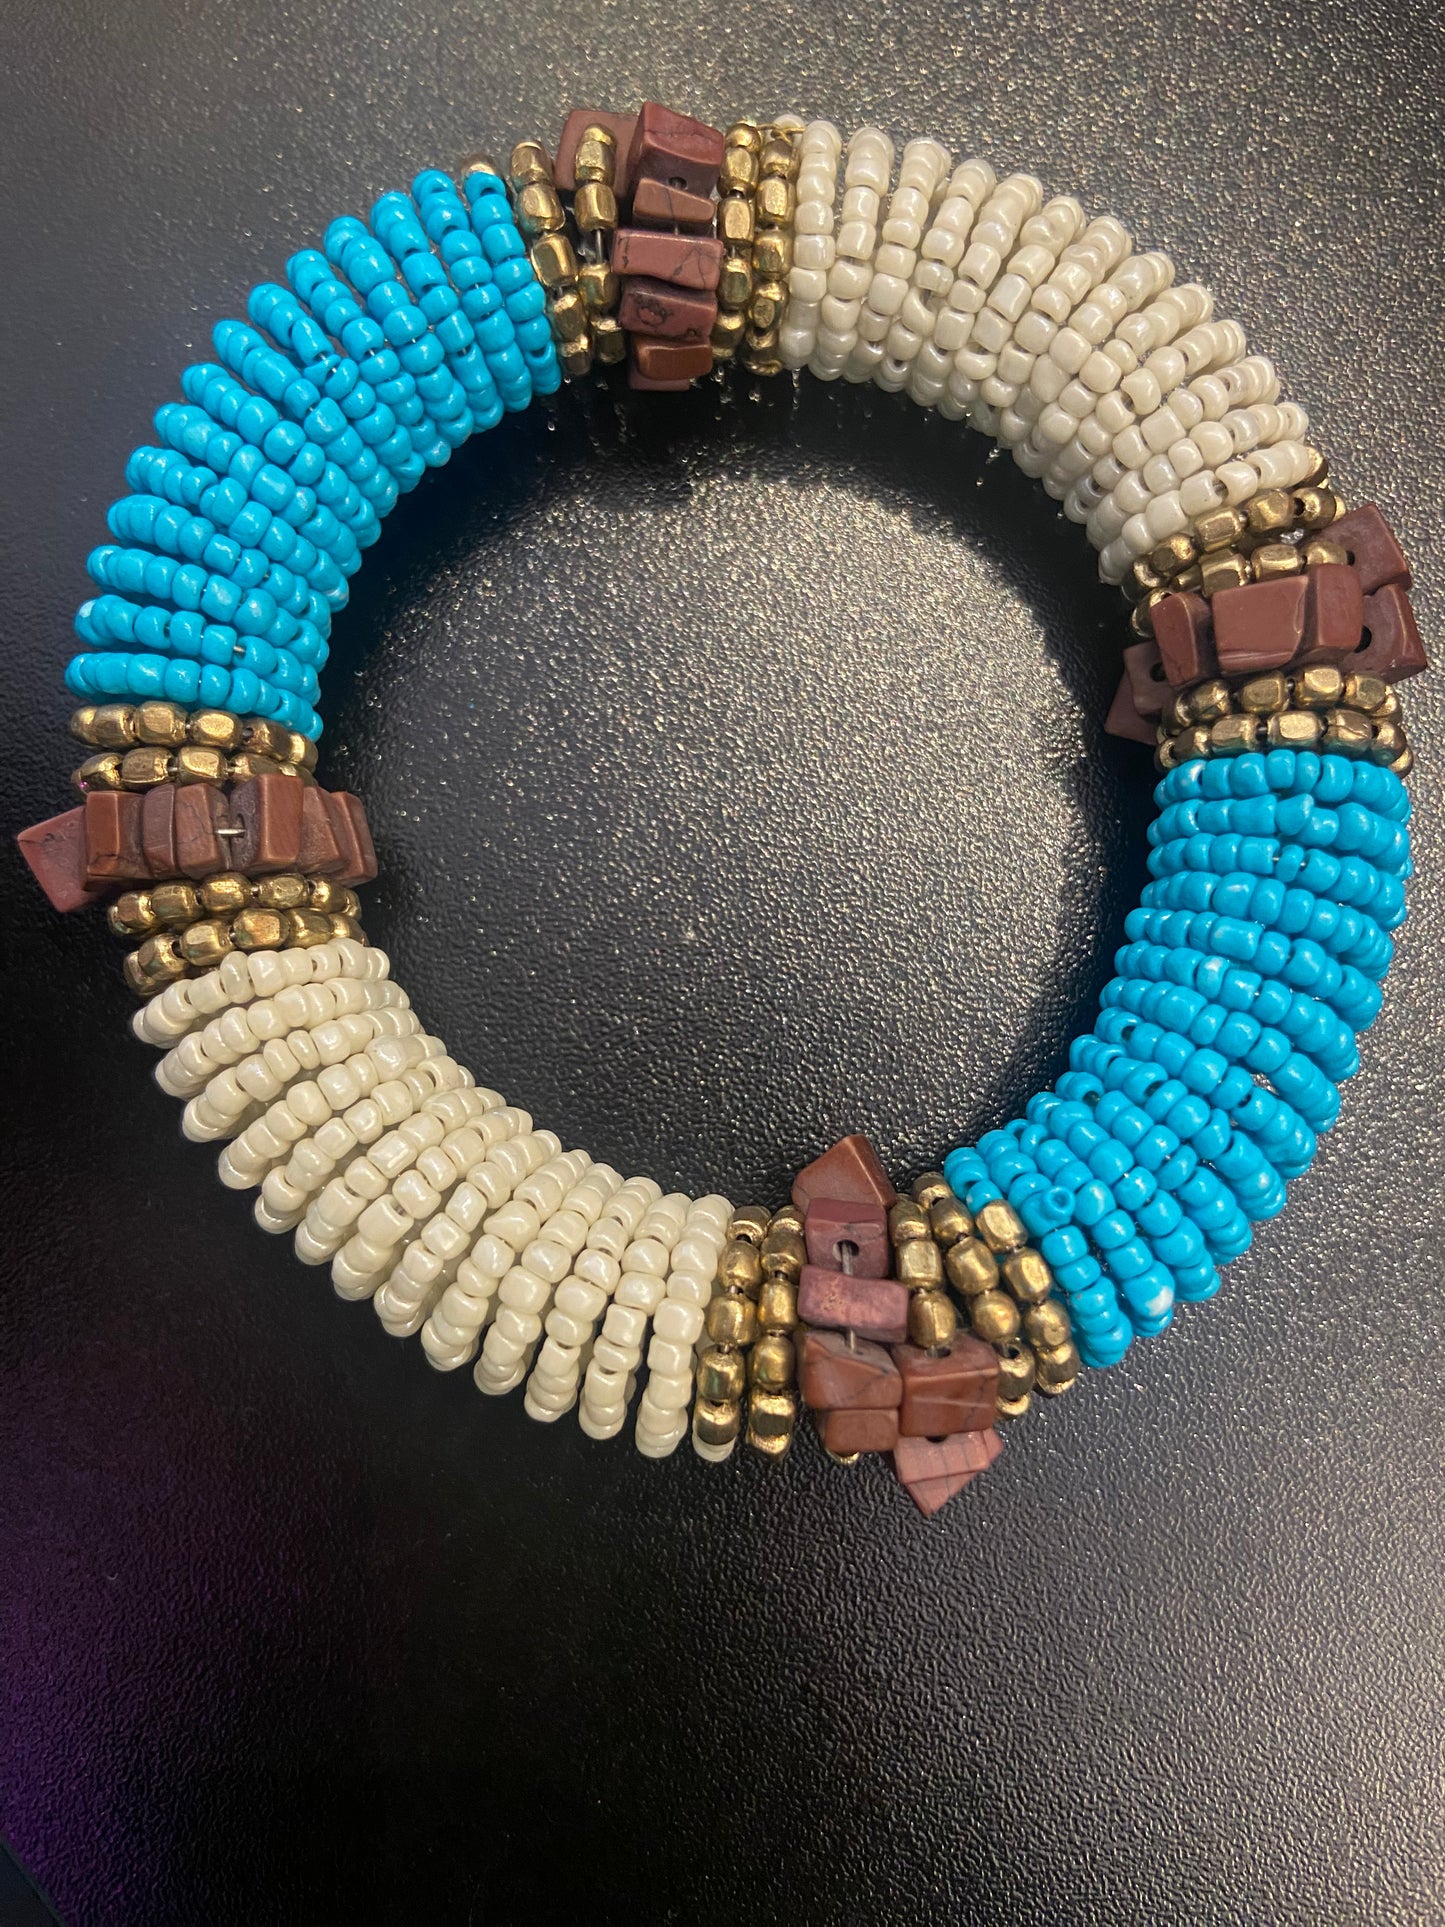 Arm candy bead bracelet